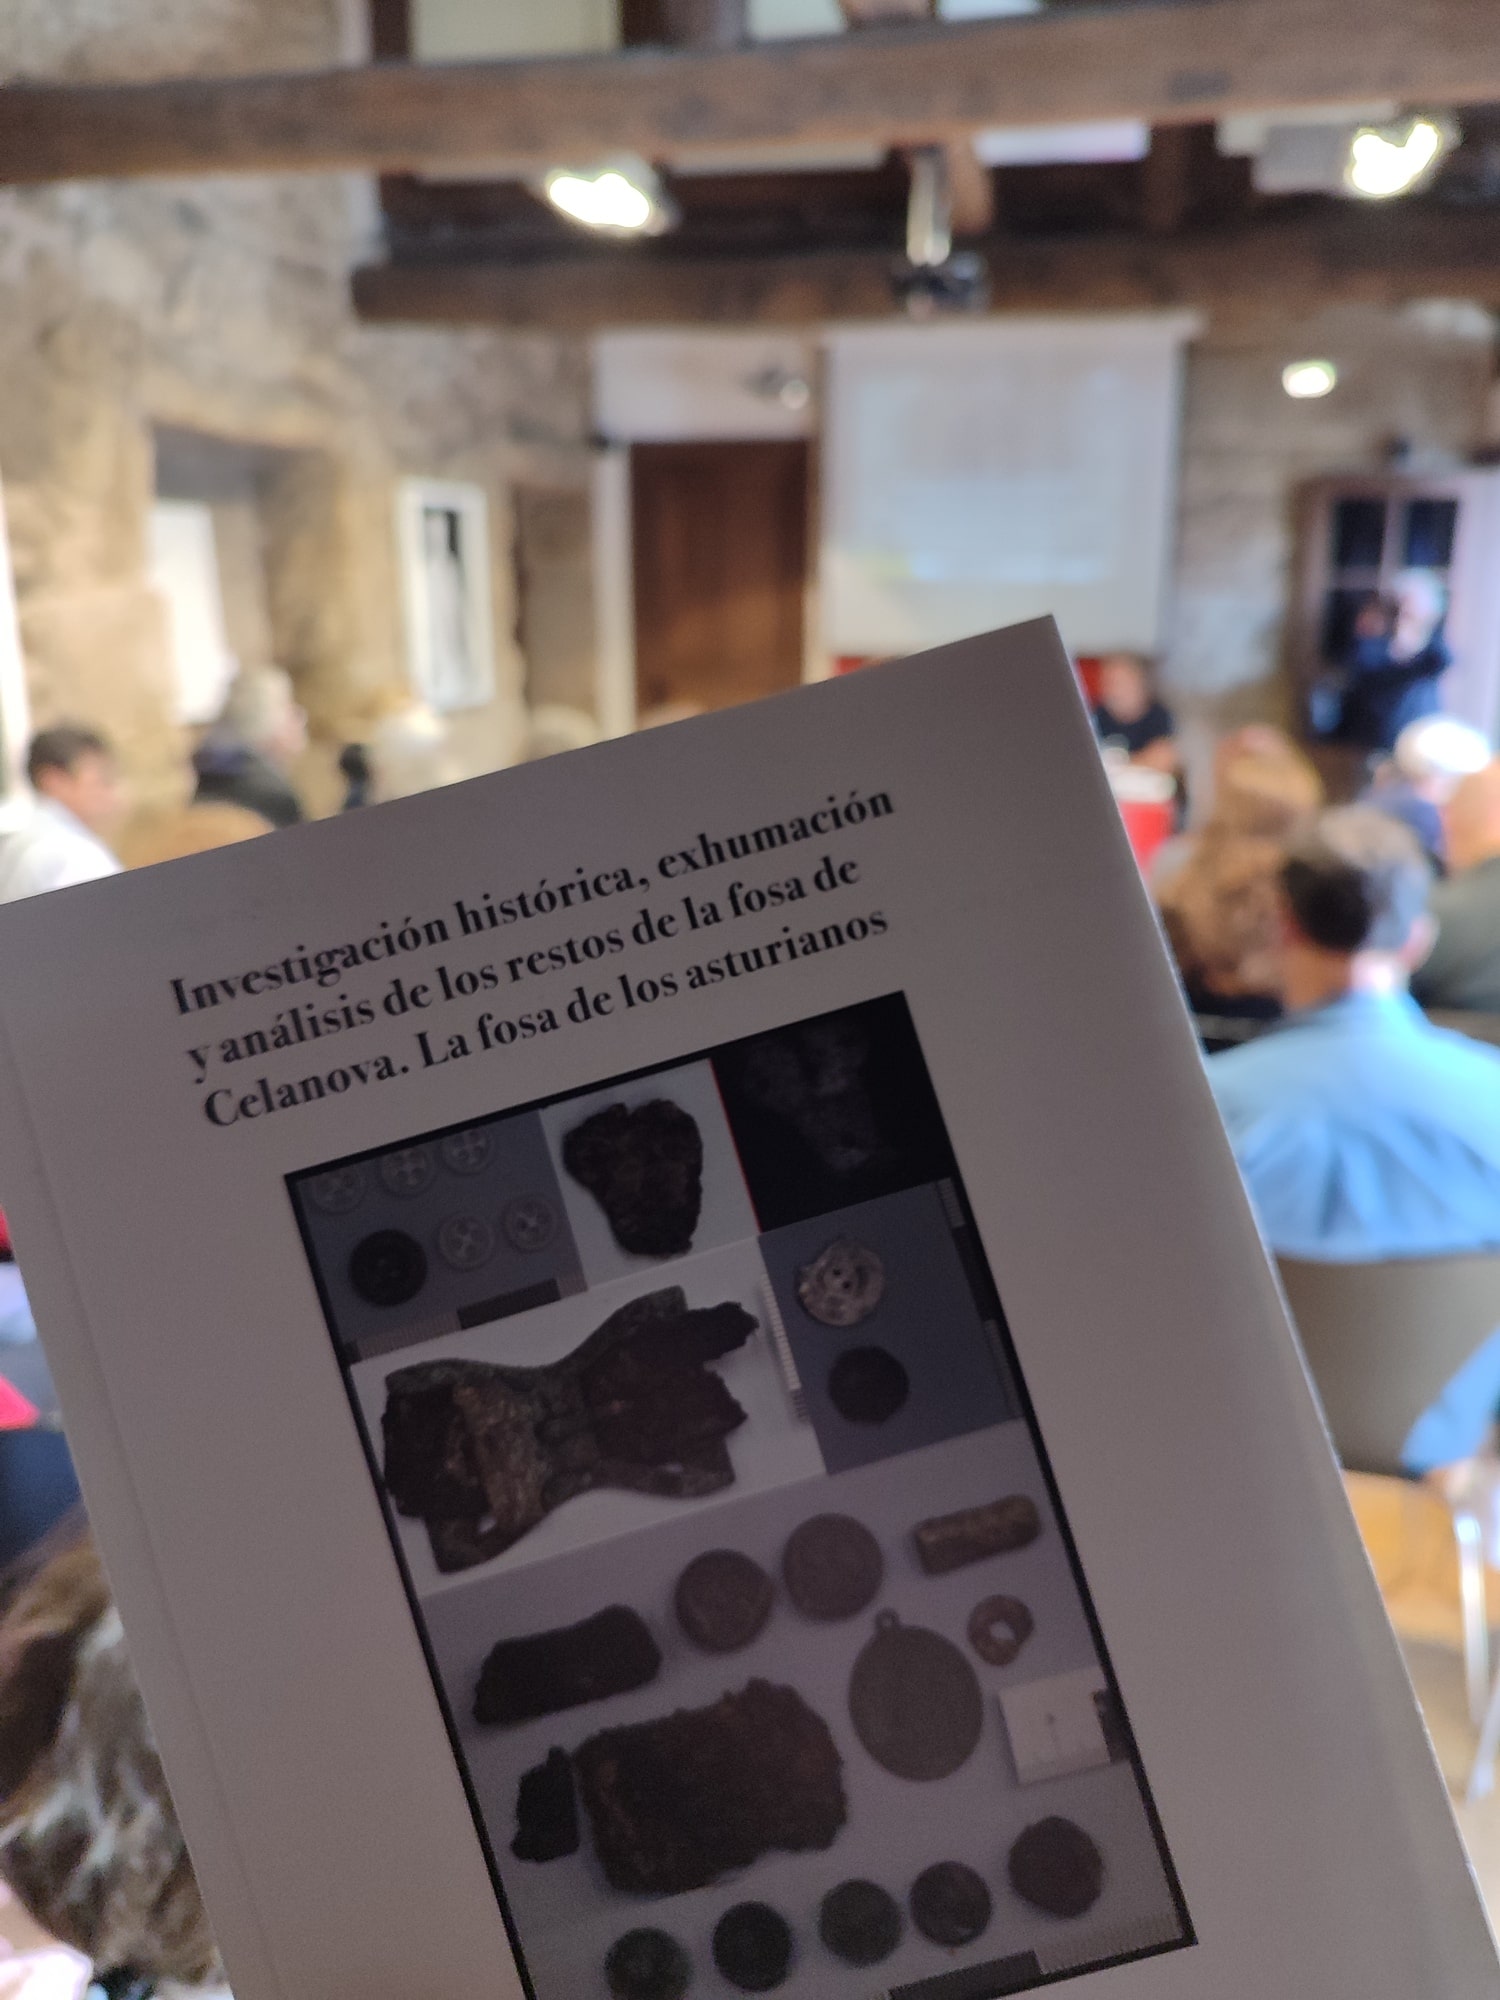 Presentación del libro «Investigación histórica, exhumación y análisis de los restos de la fosa de Celanova. La fosa de los asturianos», Fundación Curros Enríquez, Celanova, octubre 2023